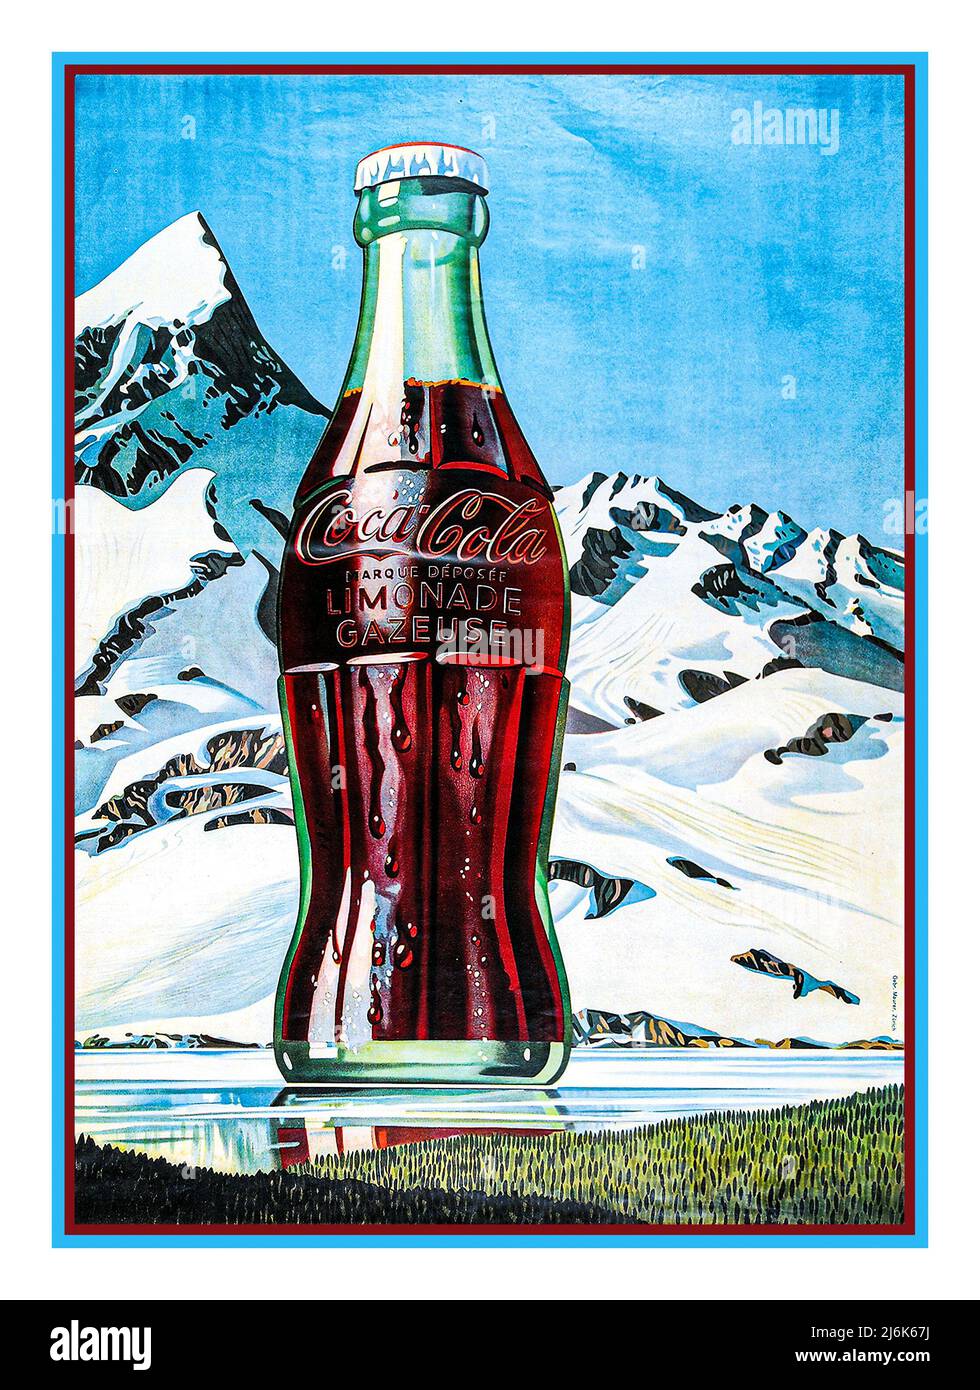 Affiche de bouteille Coca Cola classique vintage, en Suisse, env. 1940. Farblithografie. (Druck: Gebr. Maurer, Zurich) Date vers 1940 Banque D'Images